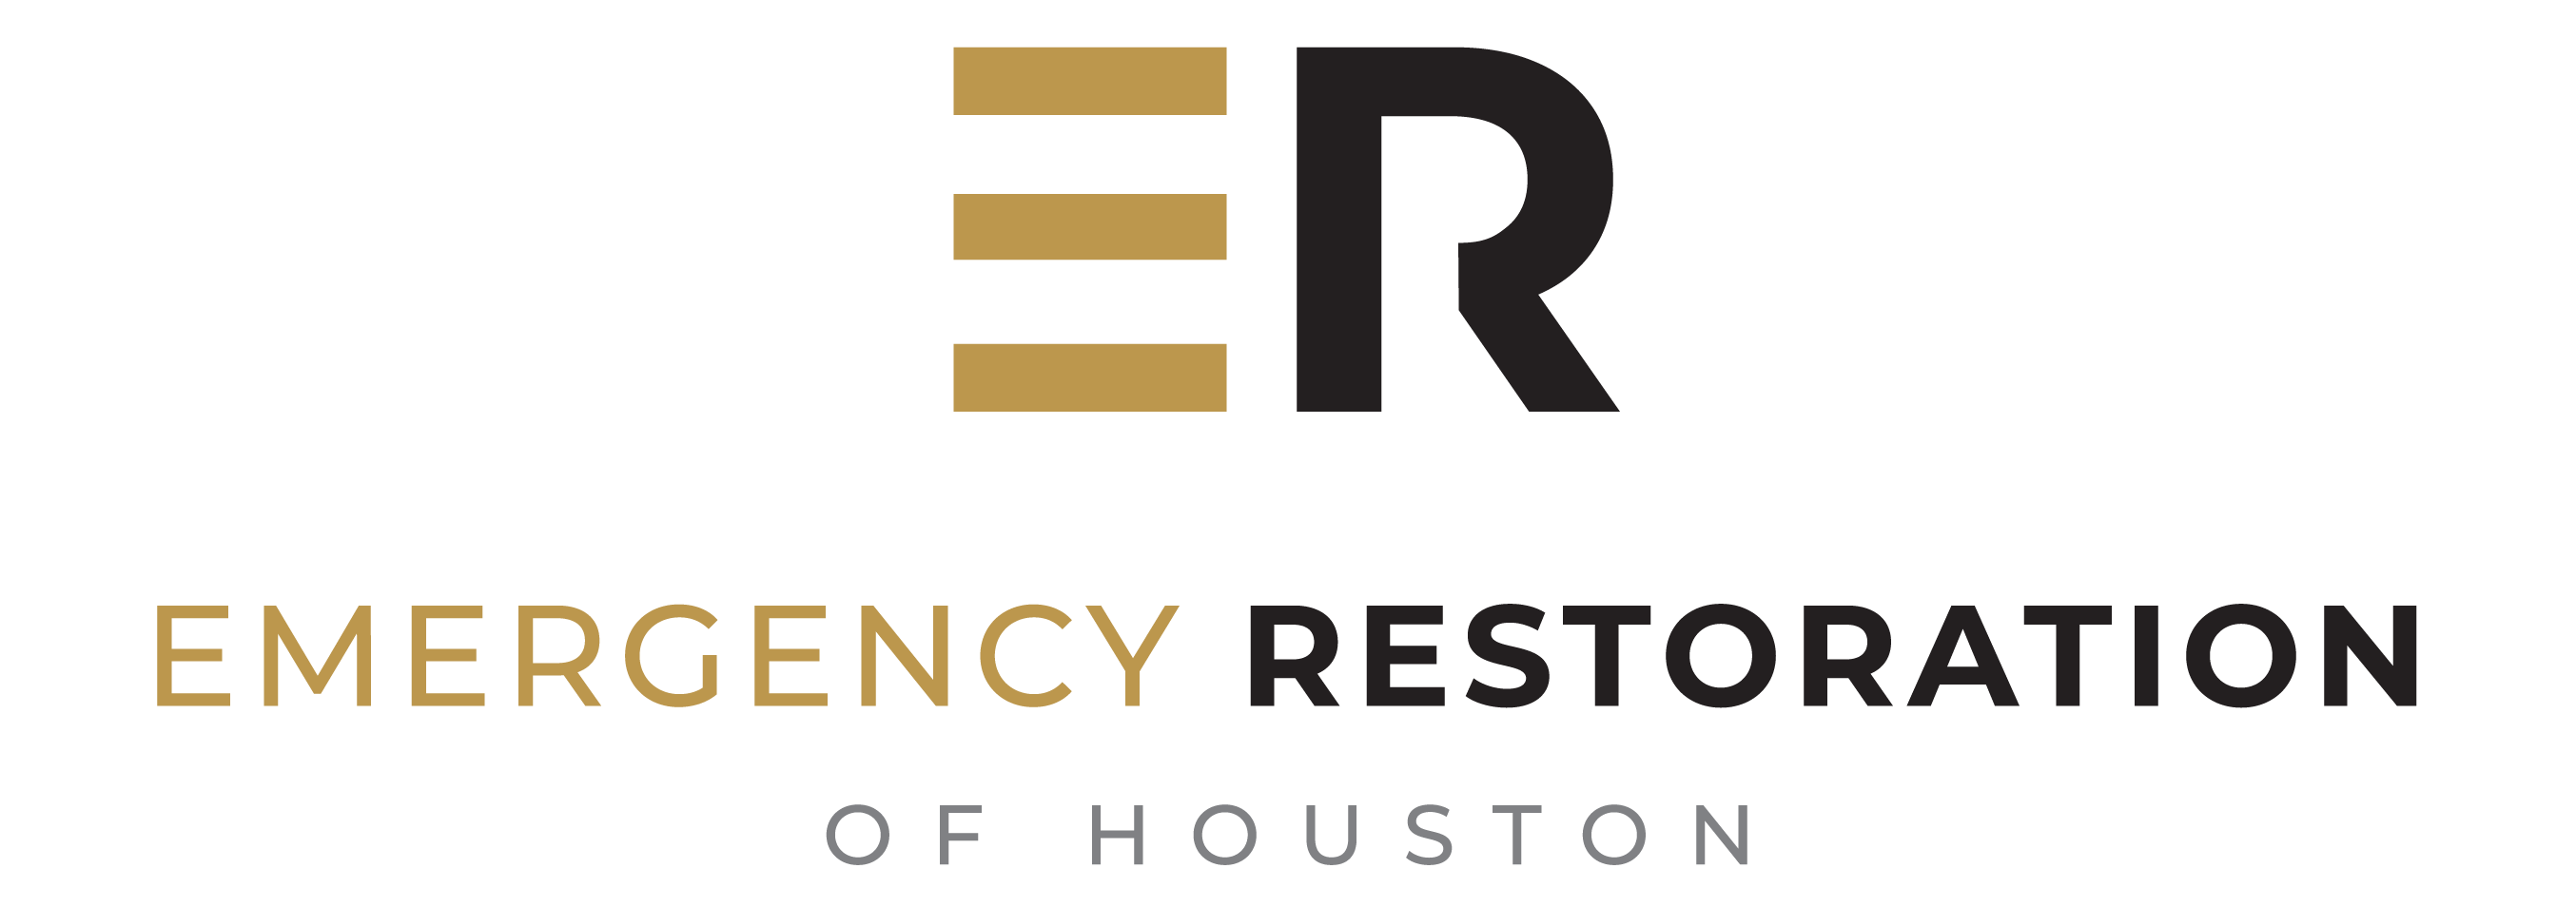 Emergency Restoration of Houston LLC